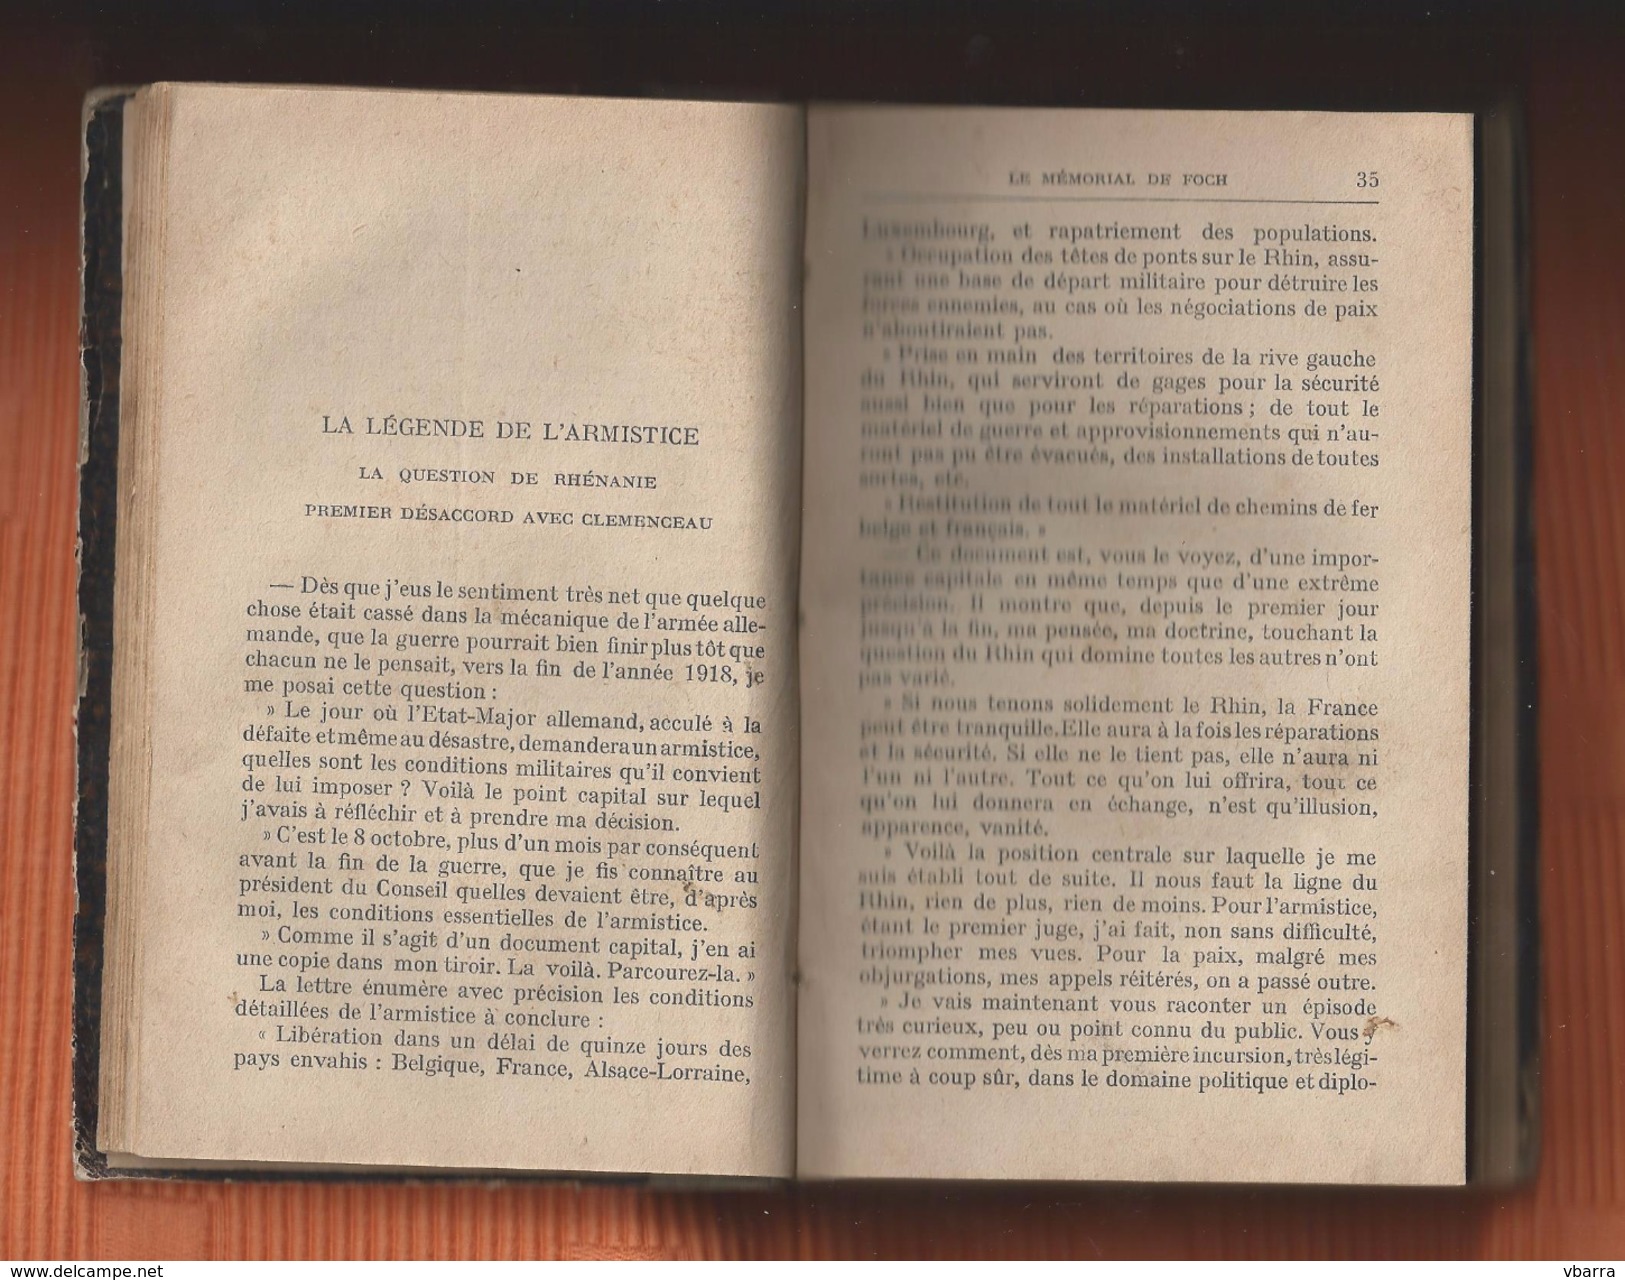 Le Mémorial FOCH. Edité en 1932 306 pages Edition France Warfare guerre de stratégie